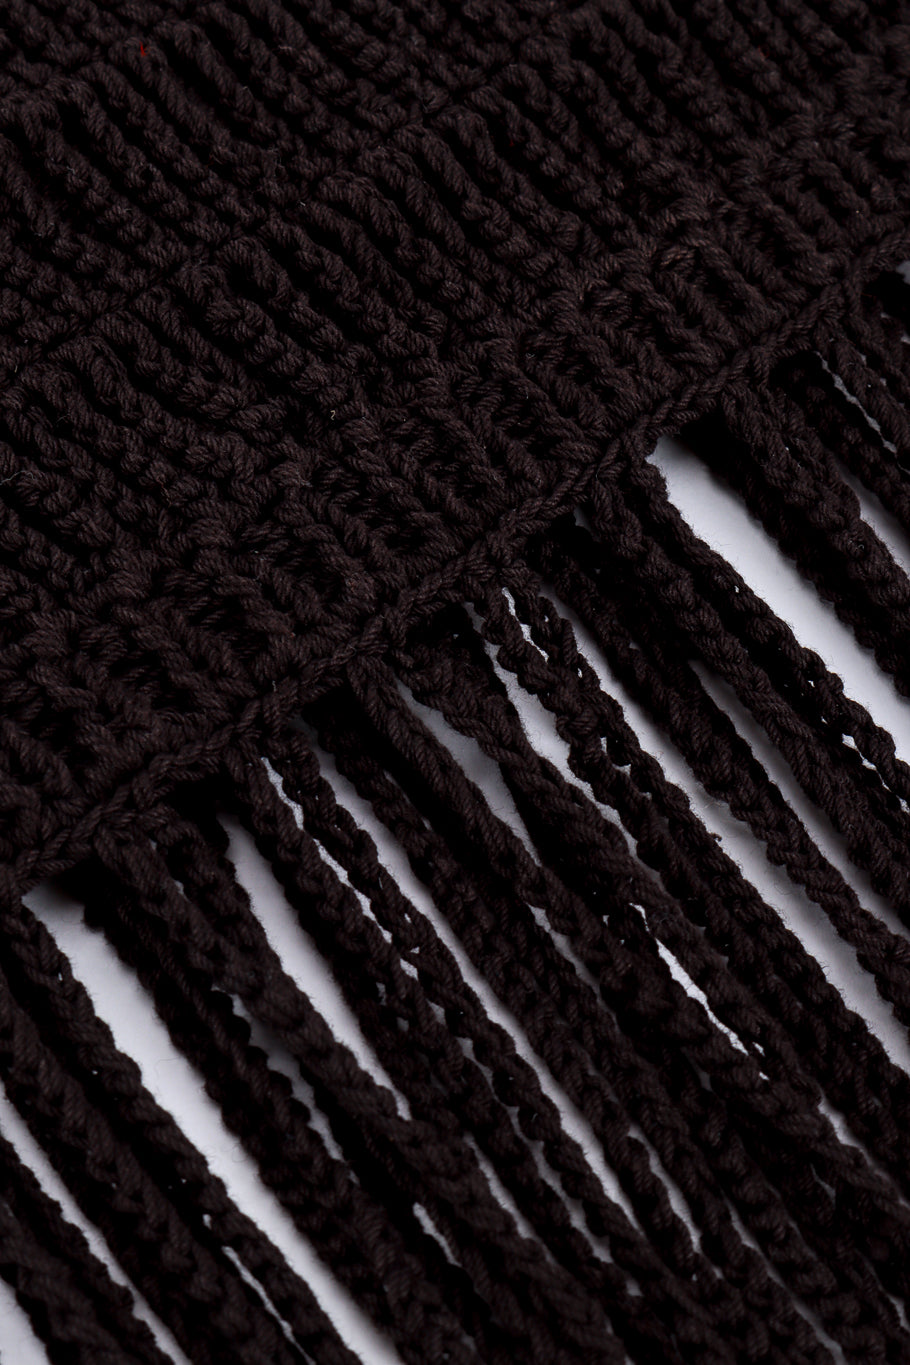 Vintage Vivienne Tam Crochet Fringe Crop Top fringe closeup @recess la